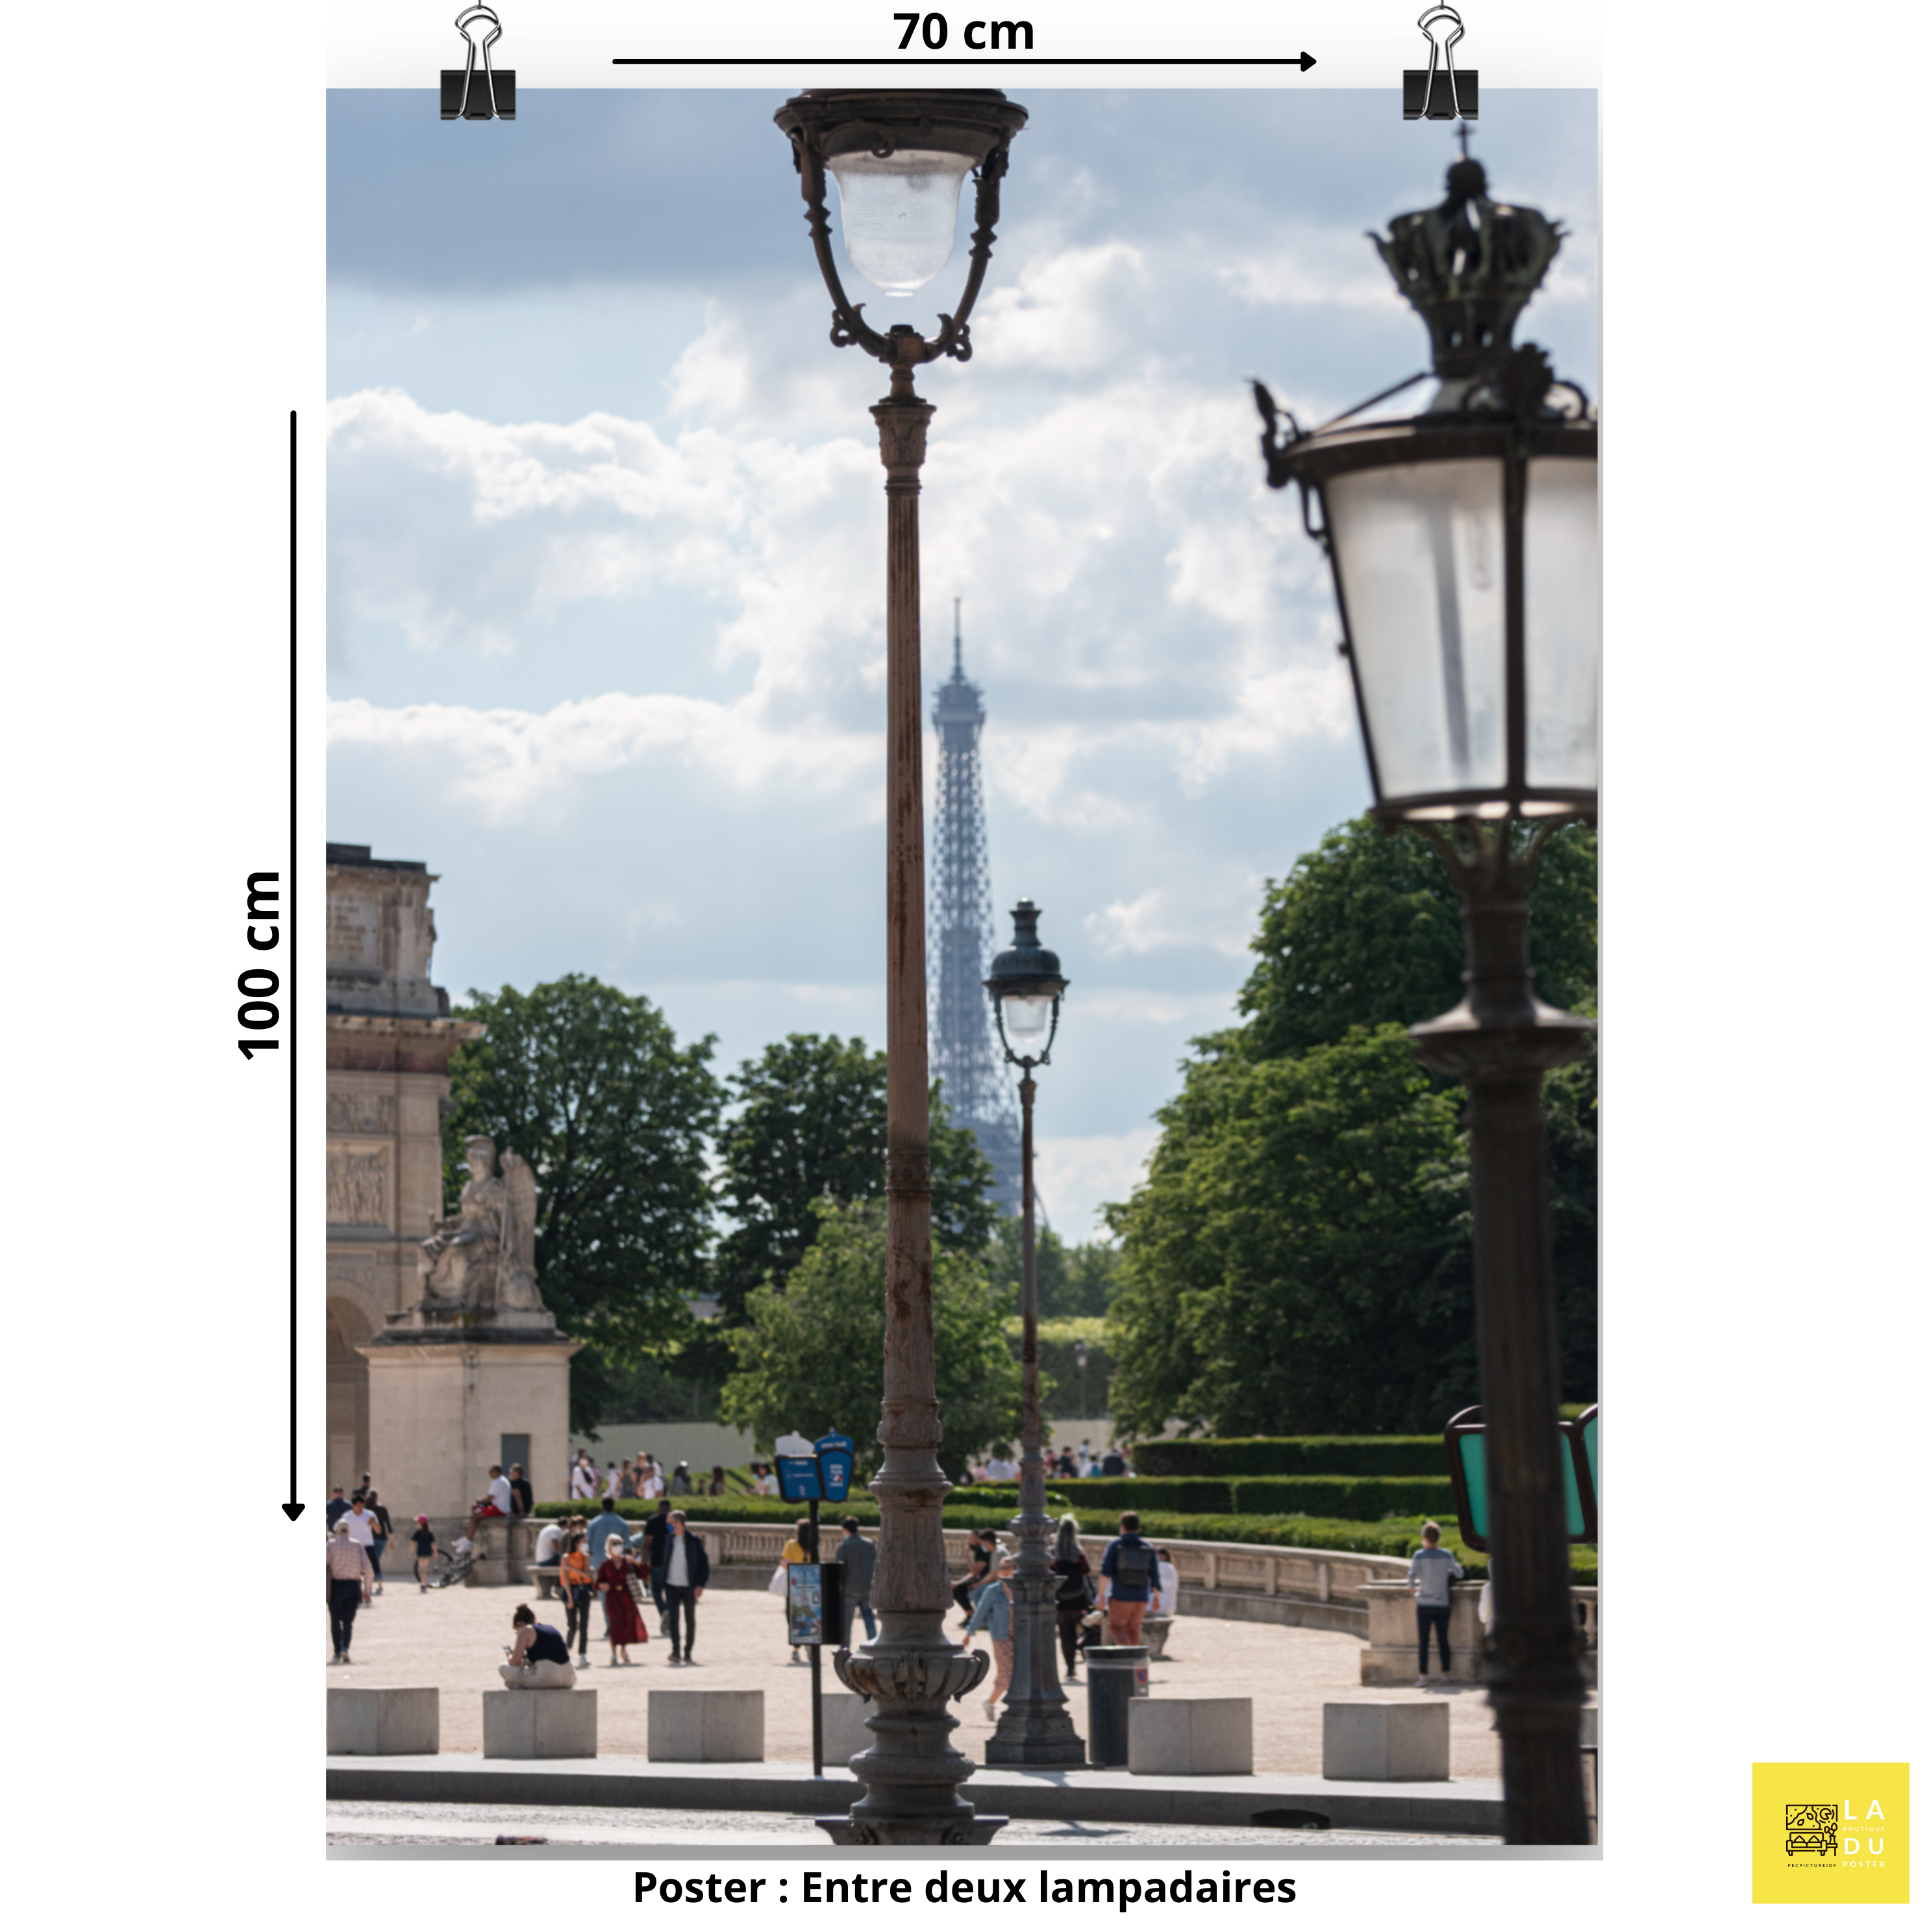 Entre deux lampadaires - Poster - La boutique du poster Français